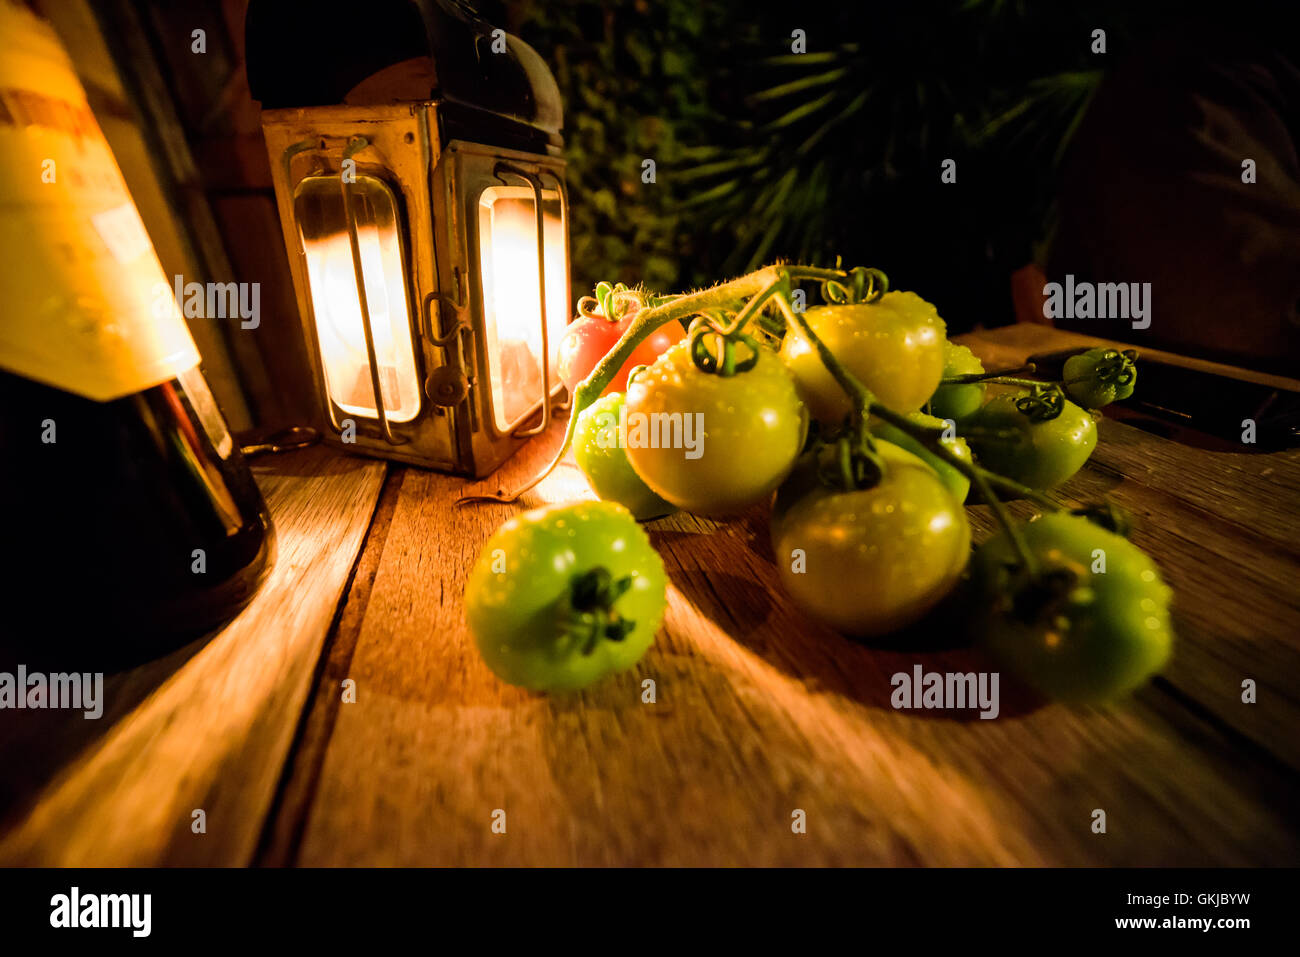 Wein und essen Sie Alfresco frische grüne Tomaten bei Kerzenlicht im Freien Stockfoto